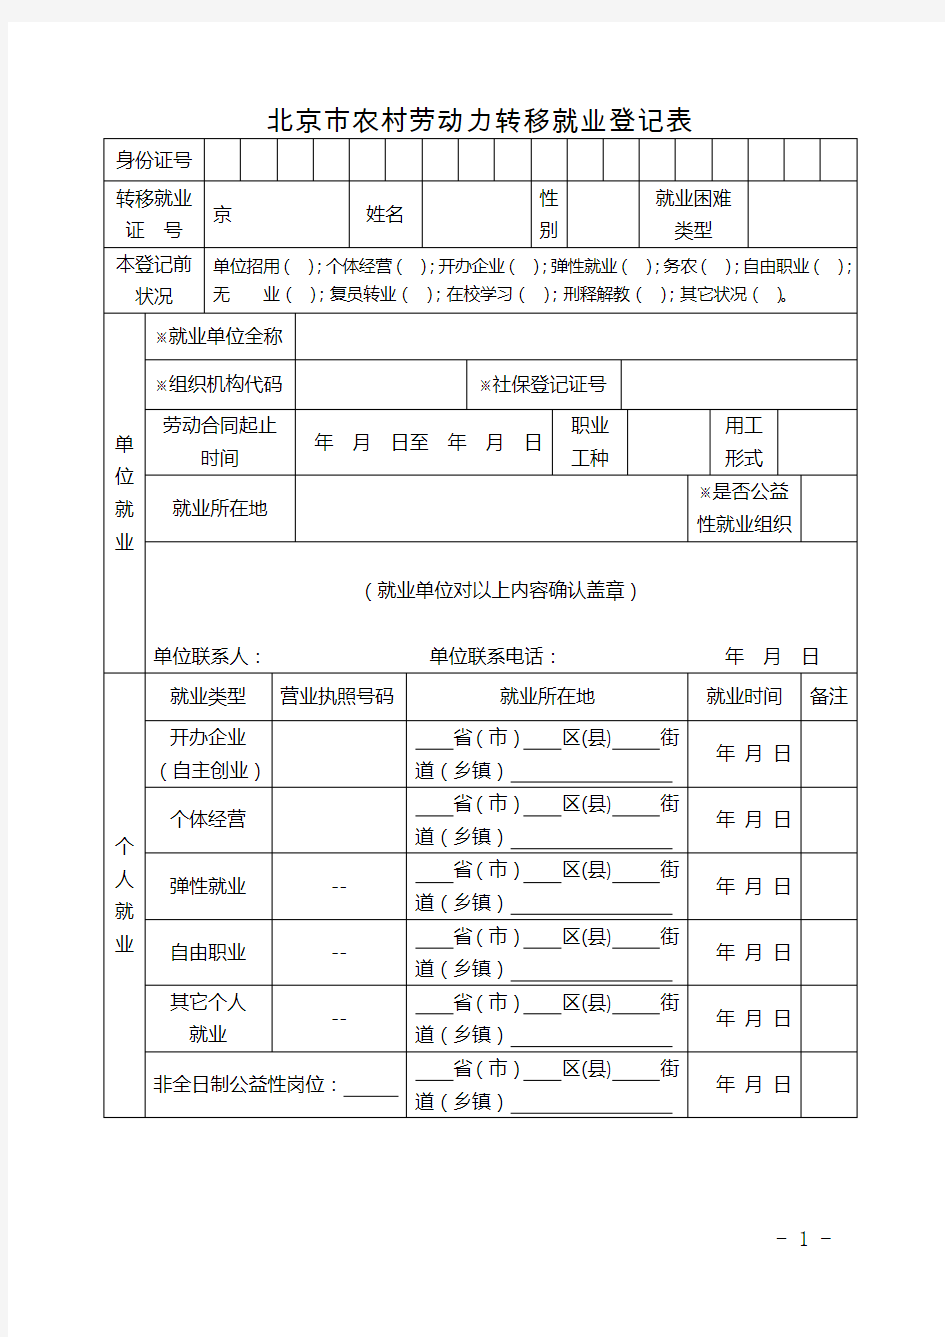 北京市农村劳动力转移就业登记表